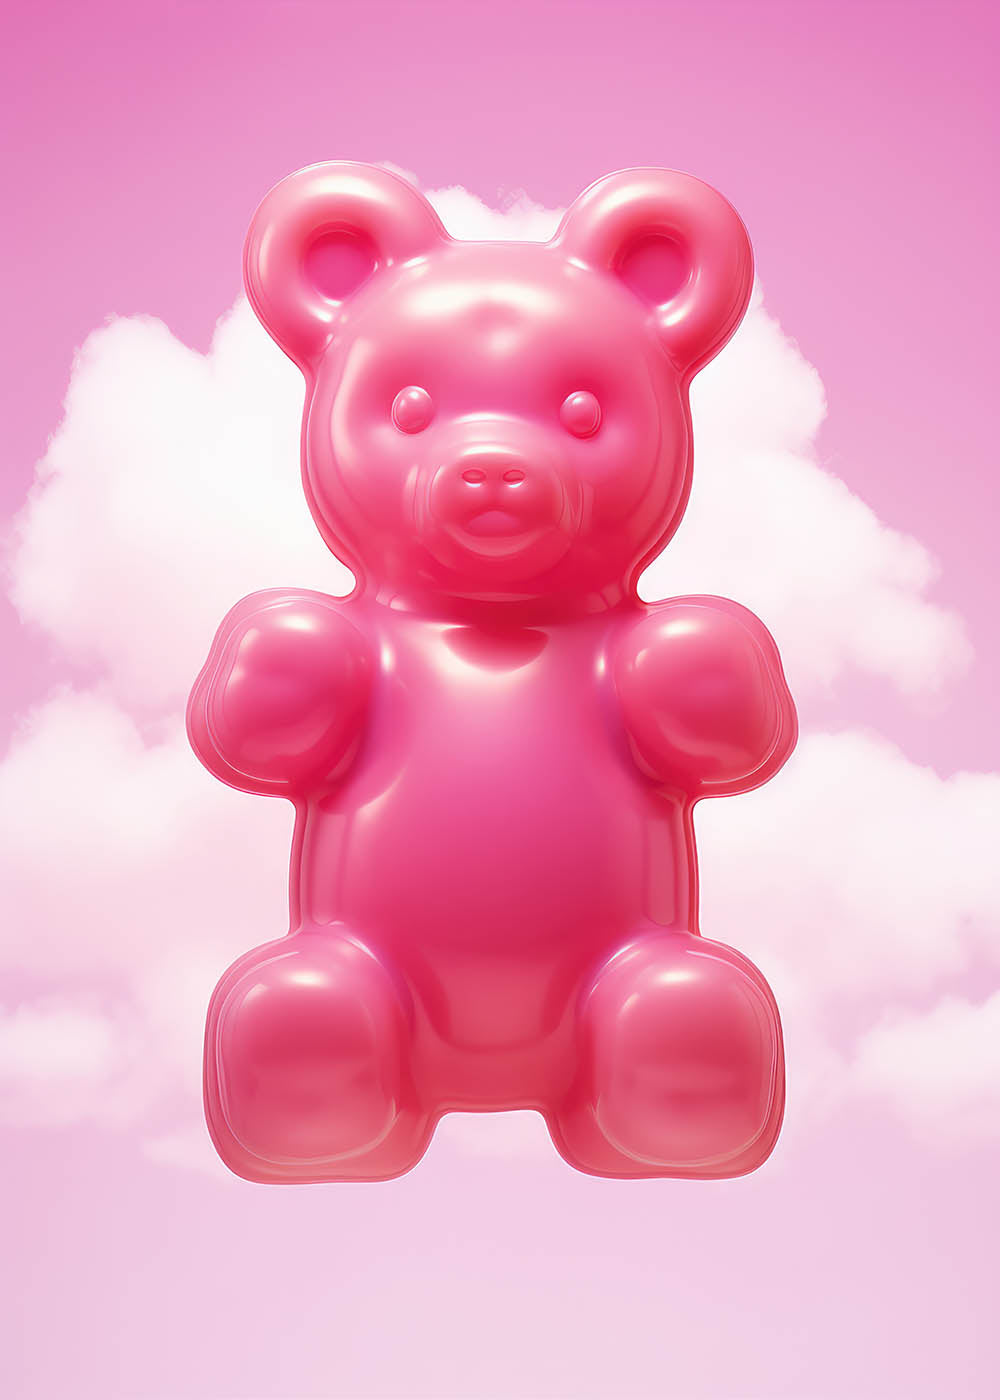 Gummy bear poster